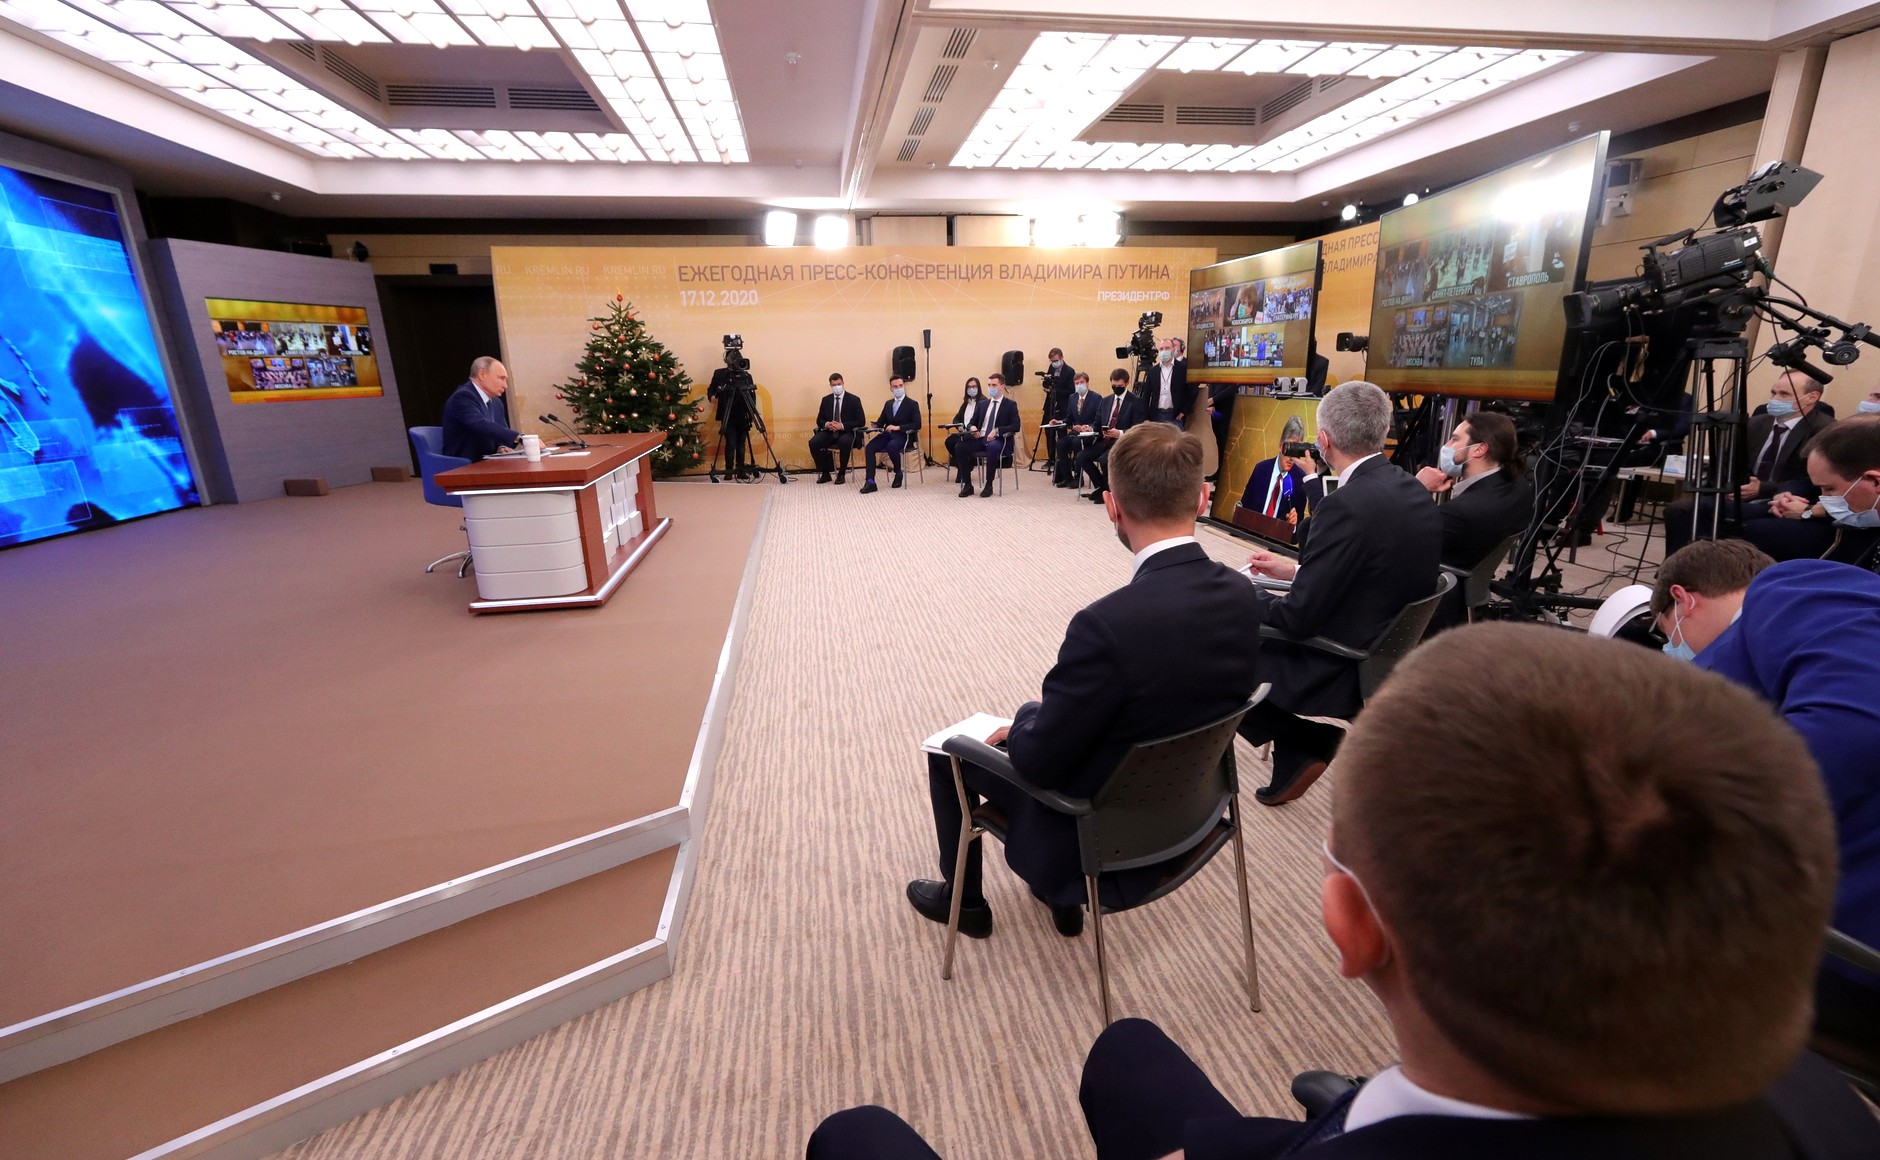 Владимир Путин оценил эффективность российской системы здравоохранения в борьбе с коронавирусом